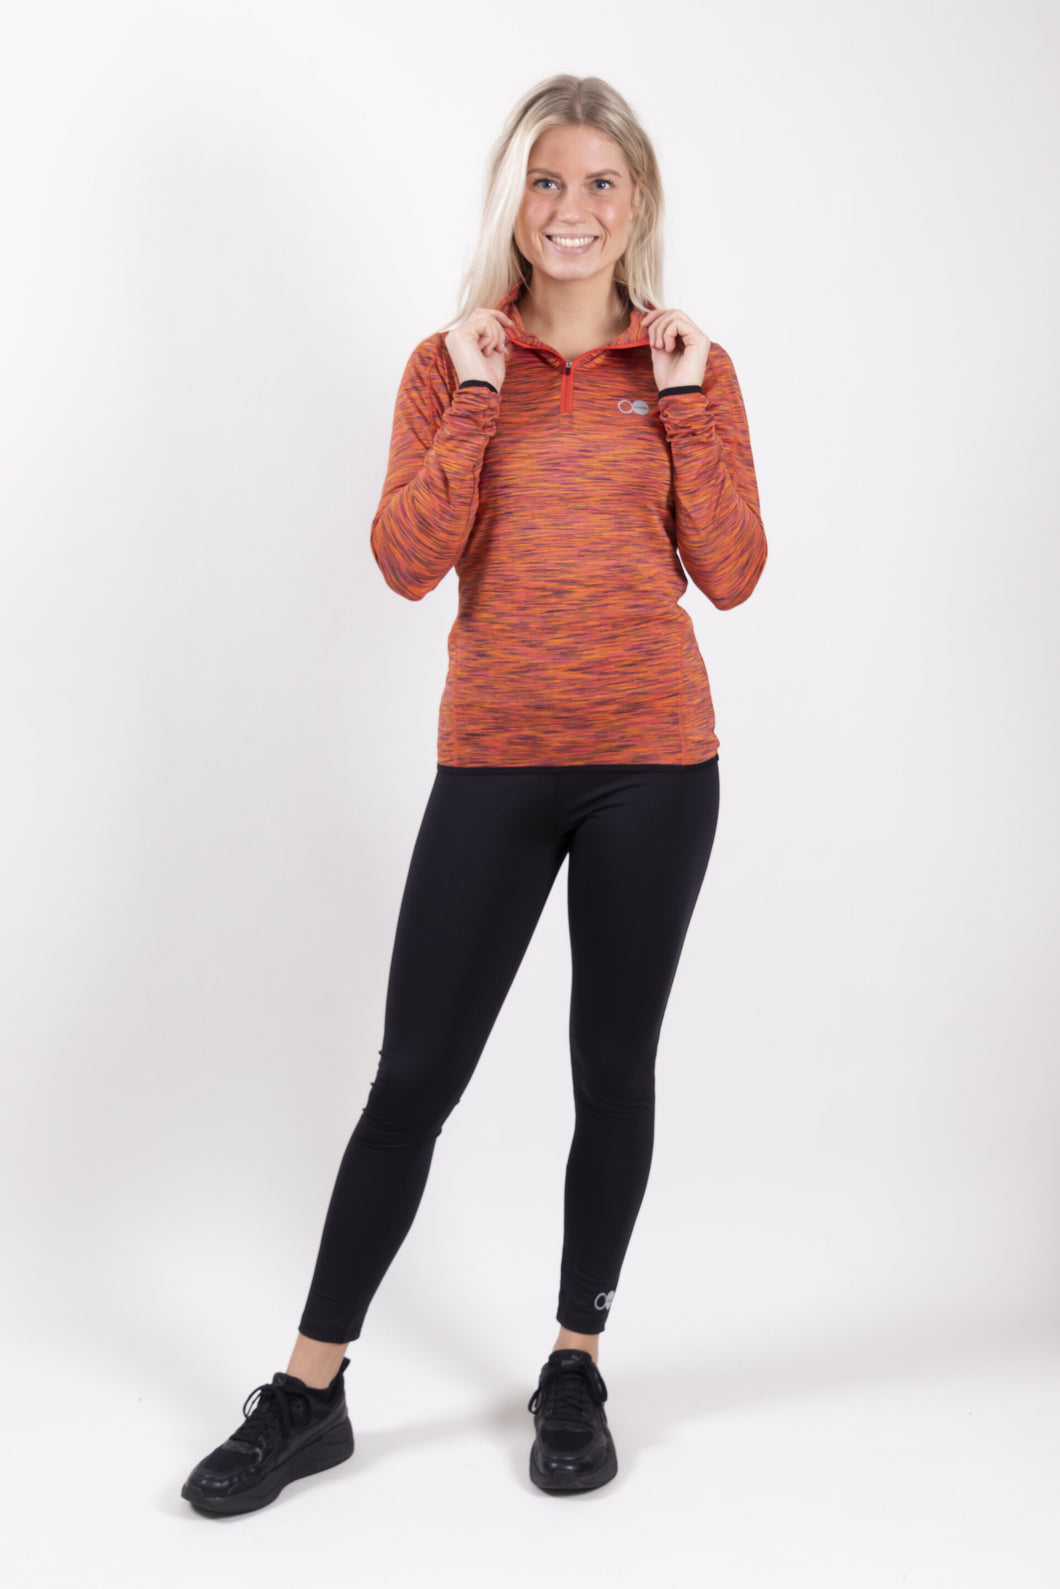 Orango Running - Womens T-shirt long sleeve Zipp - Multicolor - P010-204